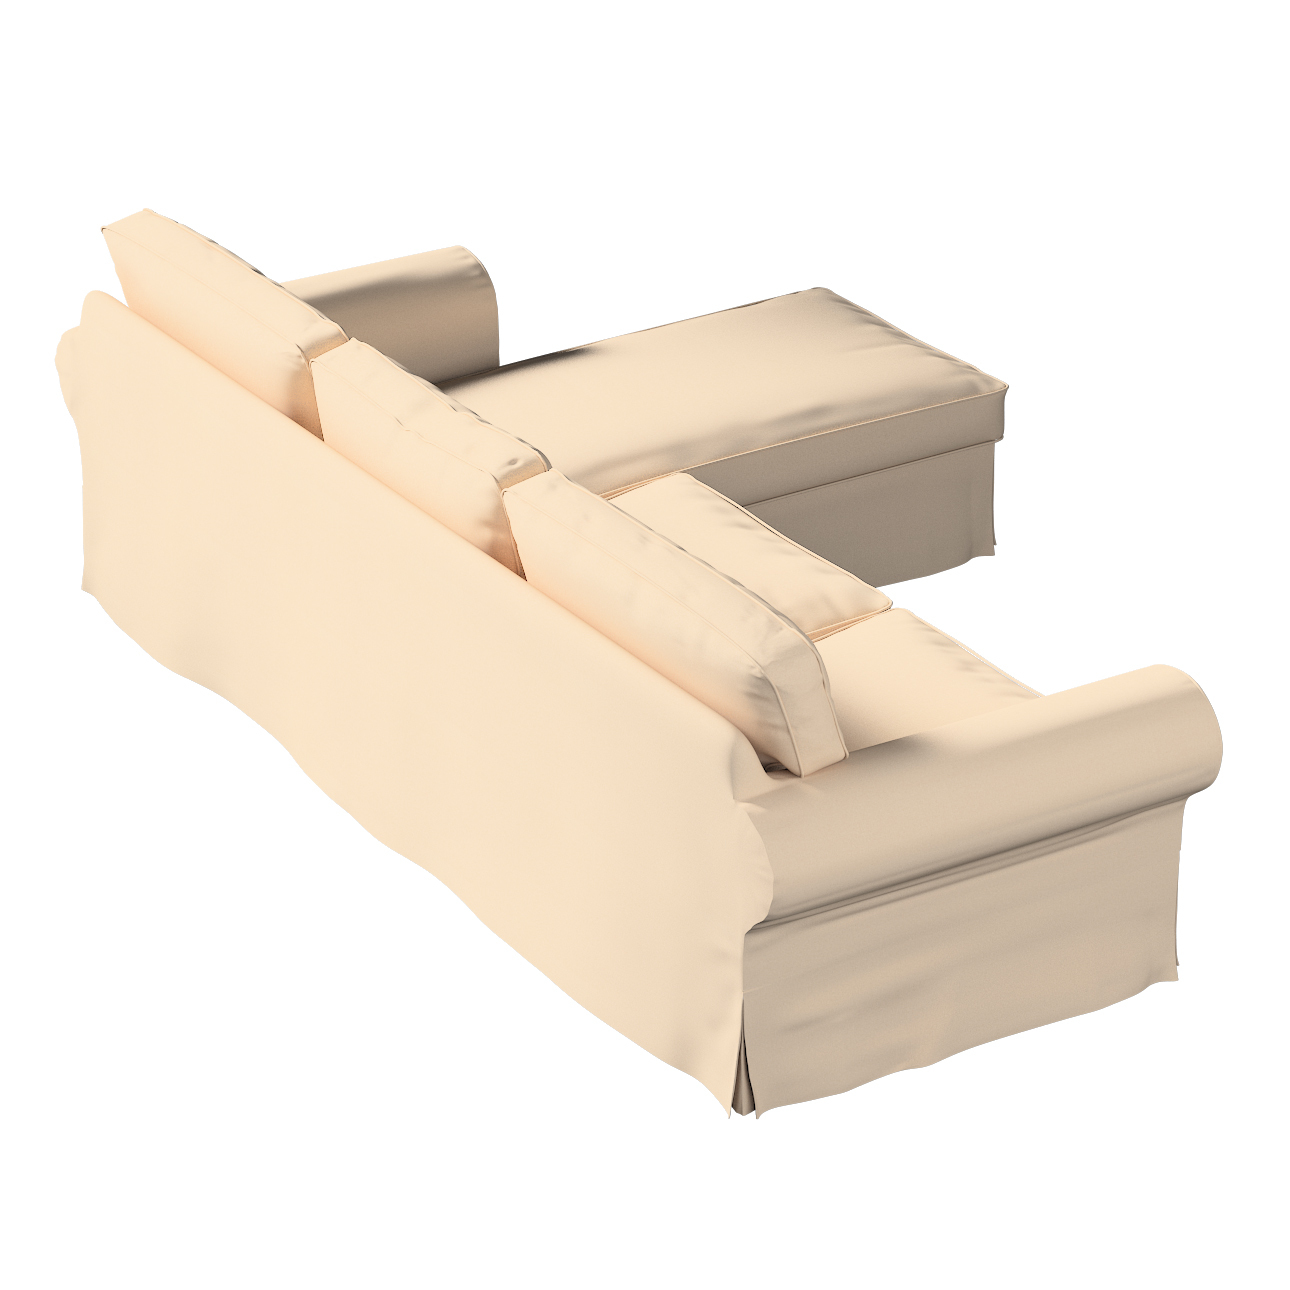 Bezug für Ektorp 2-Sitzer Sofa mit Recamiere, creme-beige, Ektorp 2-Sitzer günstig online kaufen